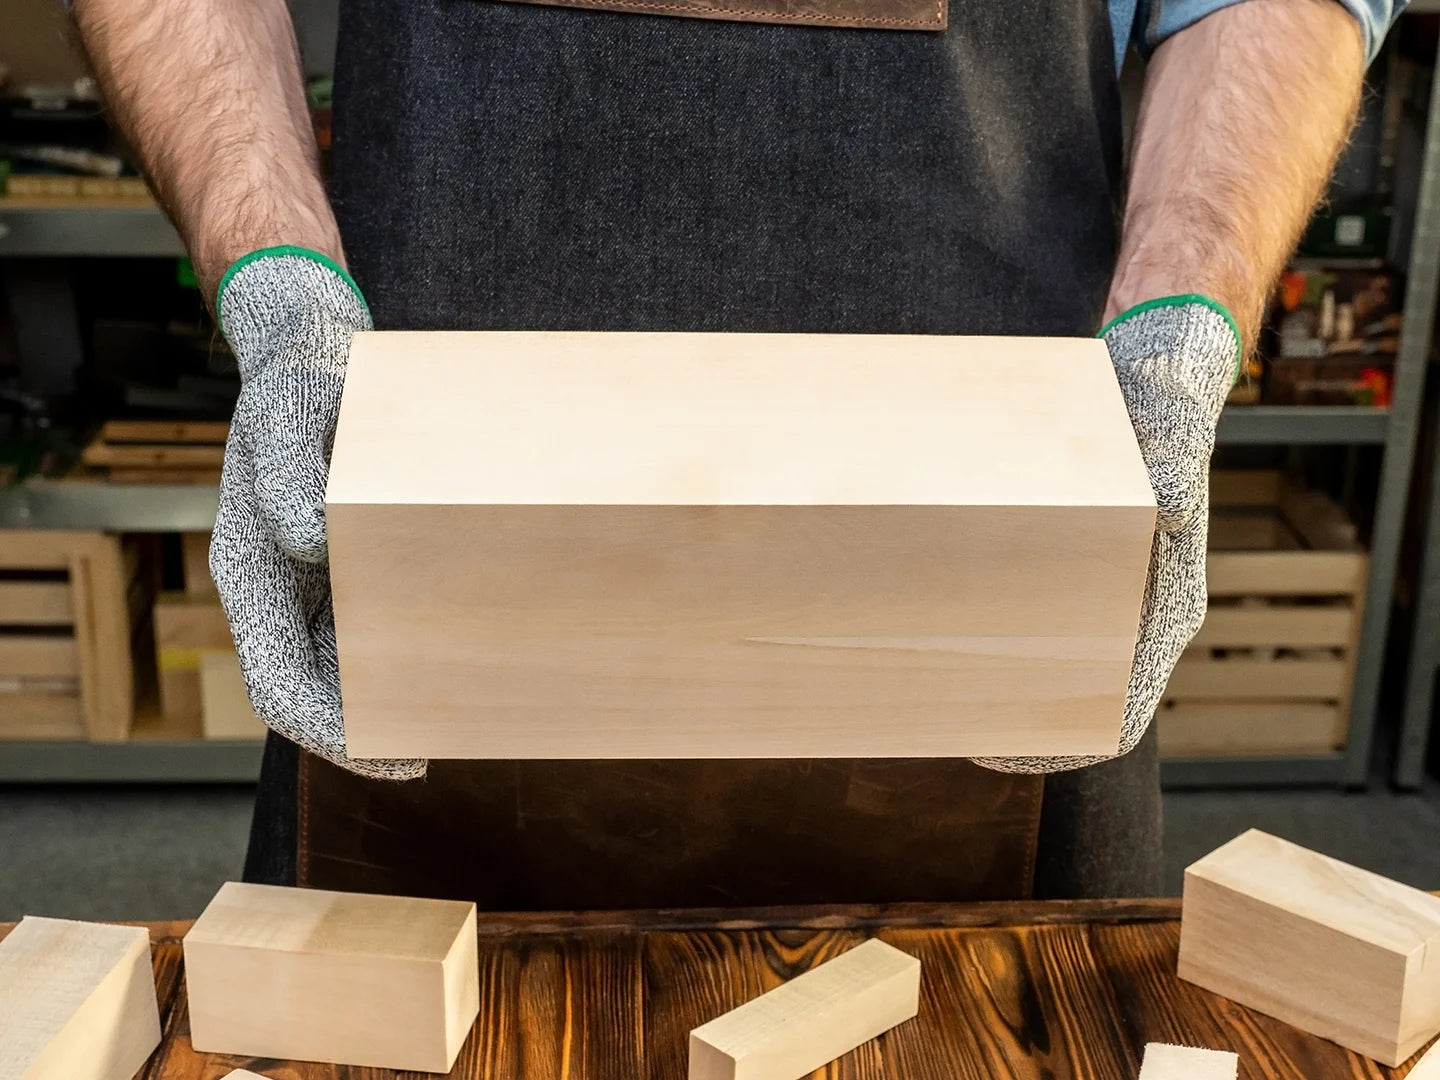 BeaverCraft Whittling Wood Carving Kit S15 Basswood Carving Blocks Set BW10  Wood Carving Tools Set Balsa Wood Blocks